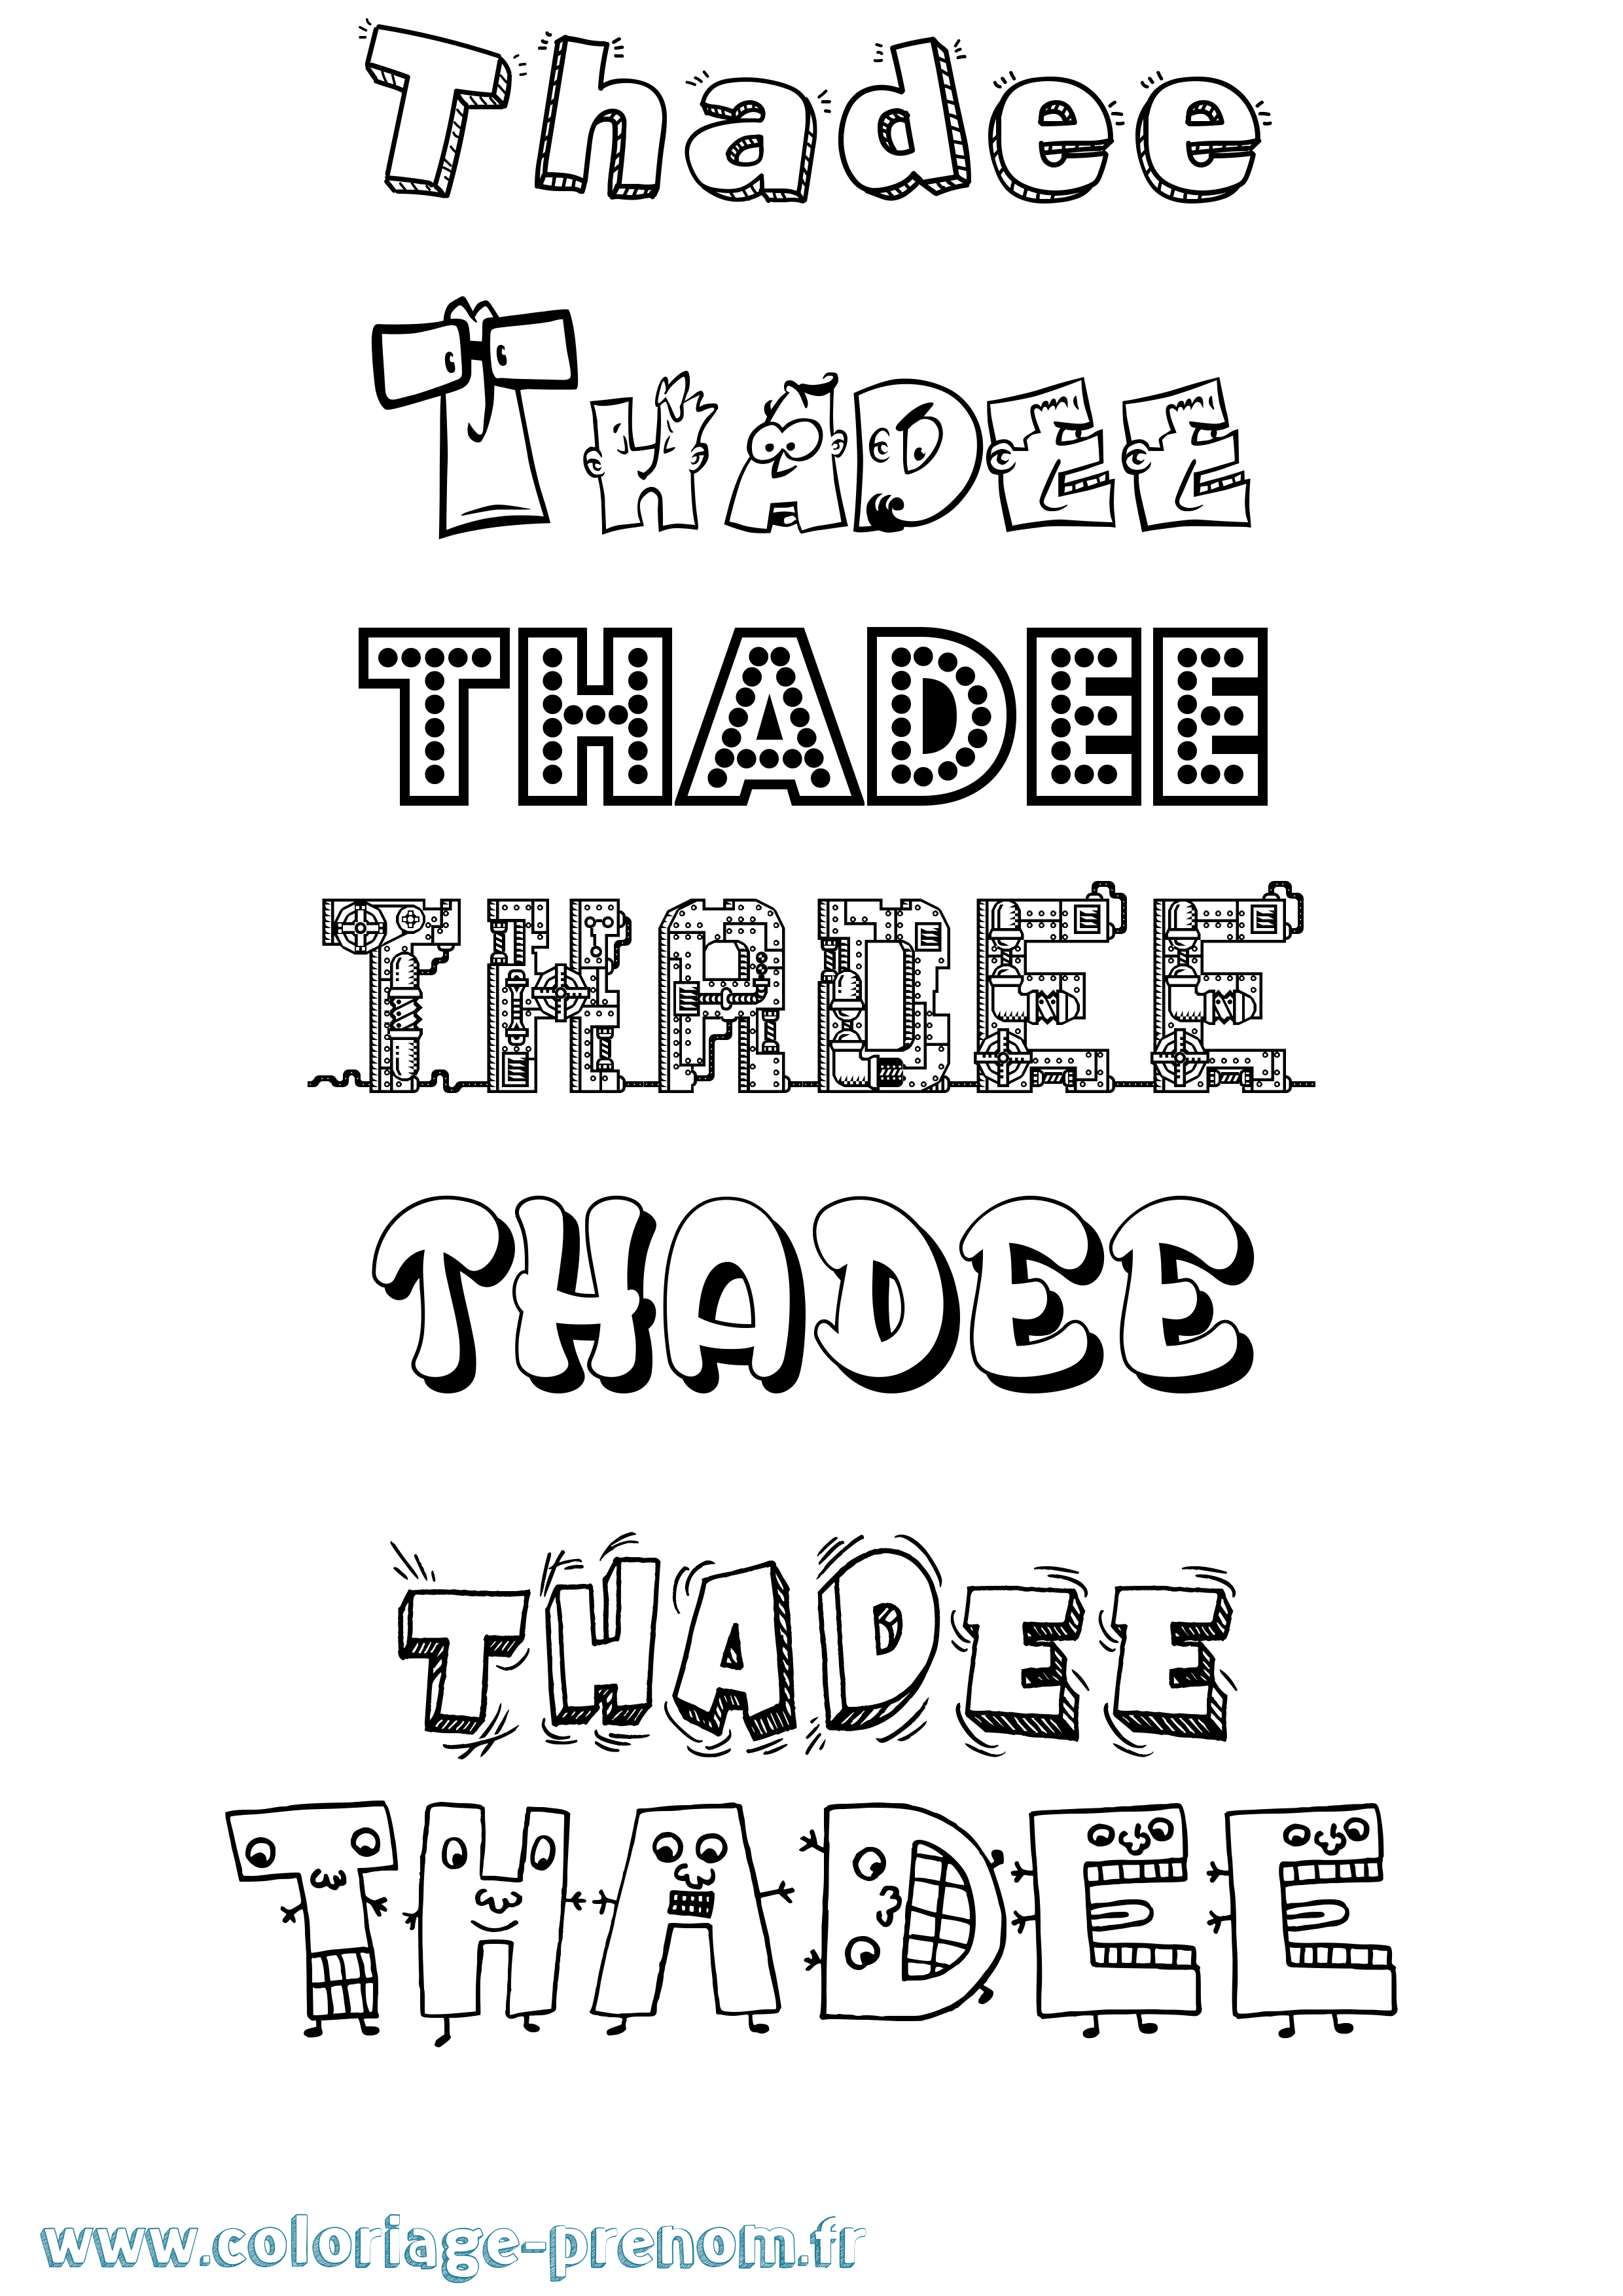 Coloriage prénom Thadee Fun